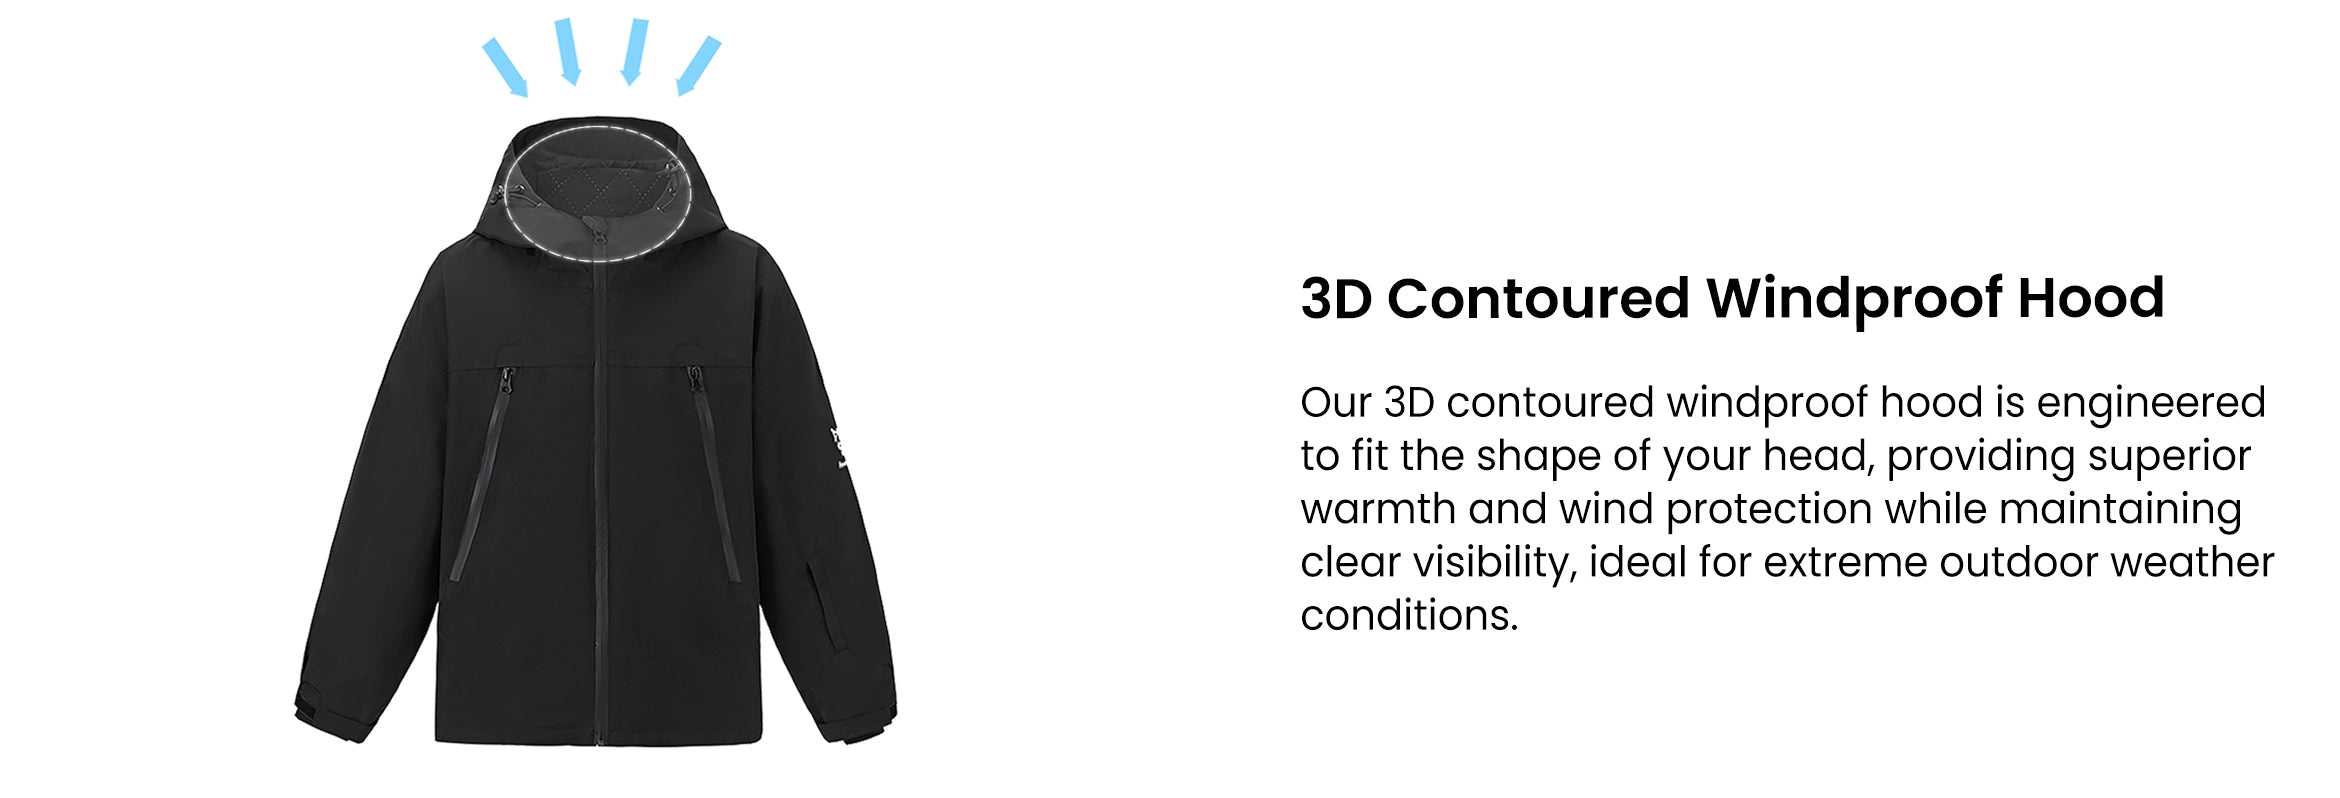 5. 3D Contoured Windproof Hood